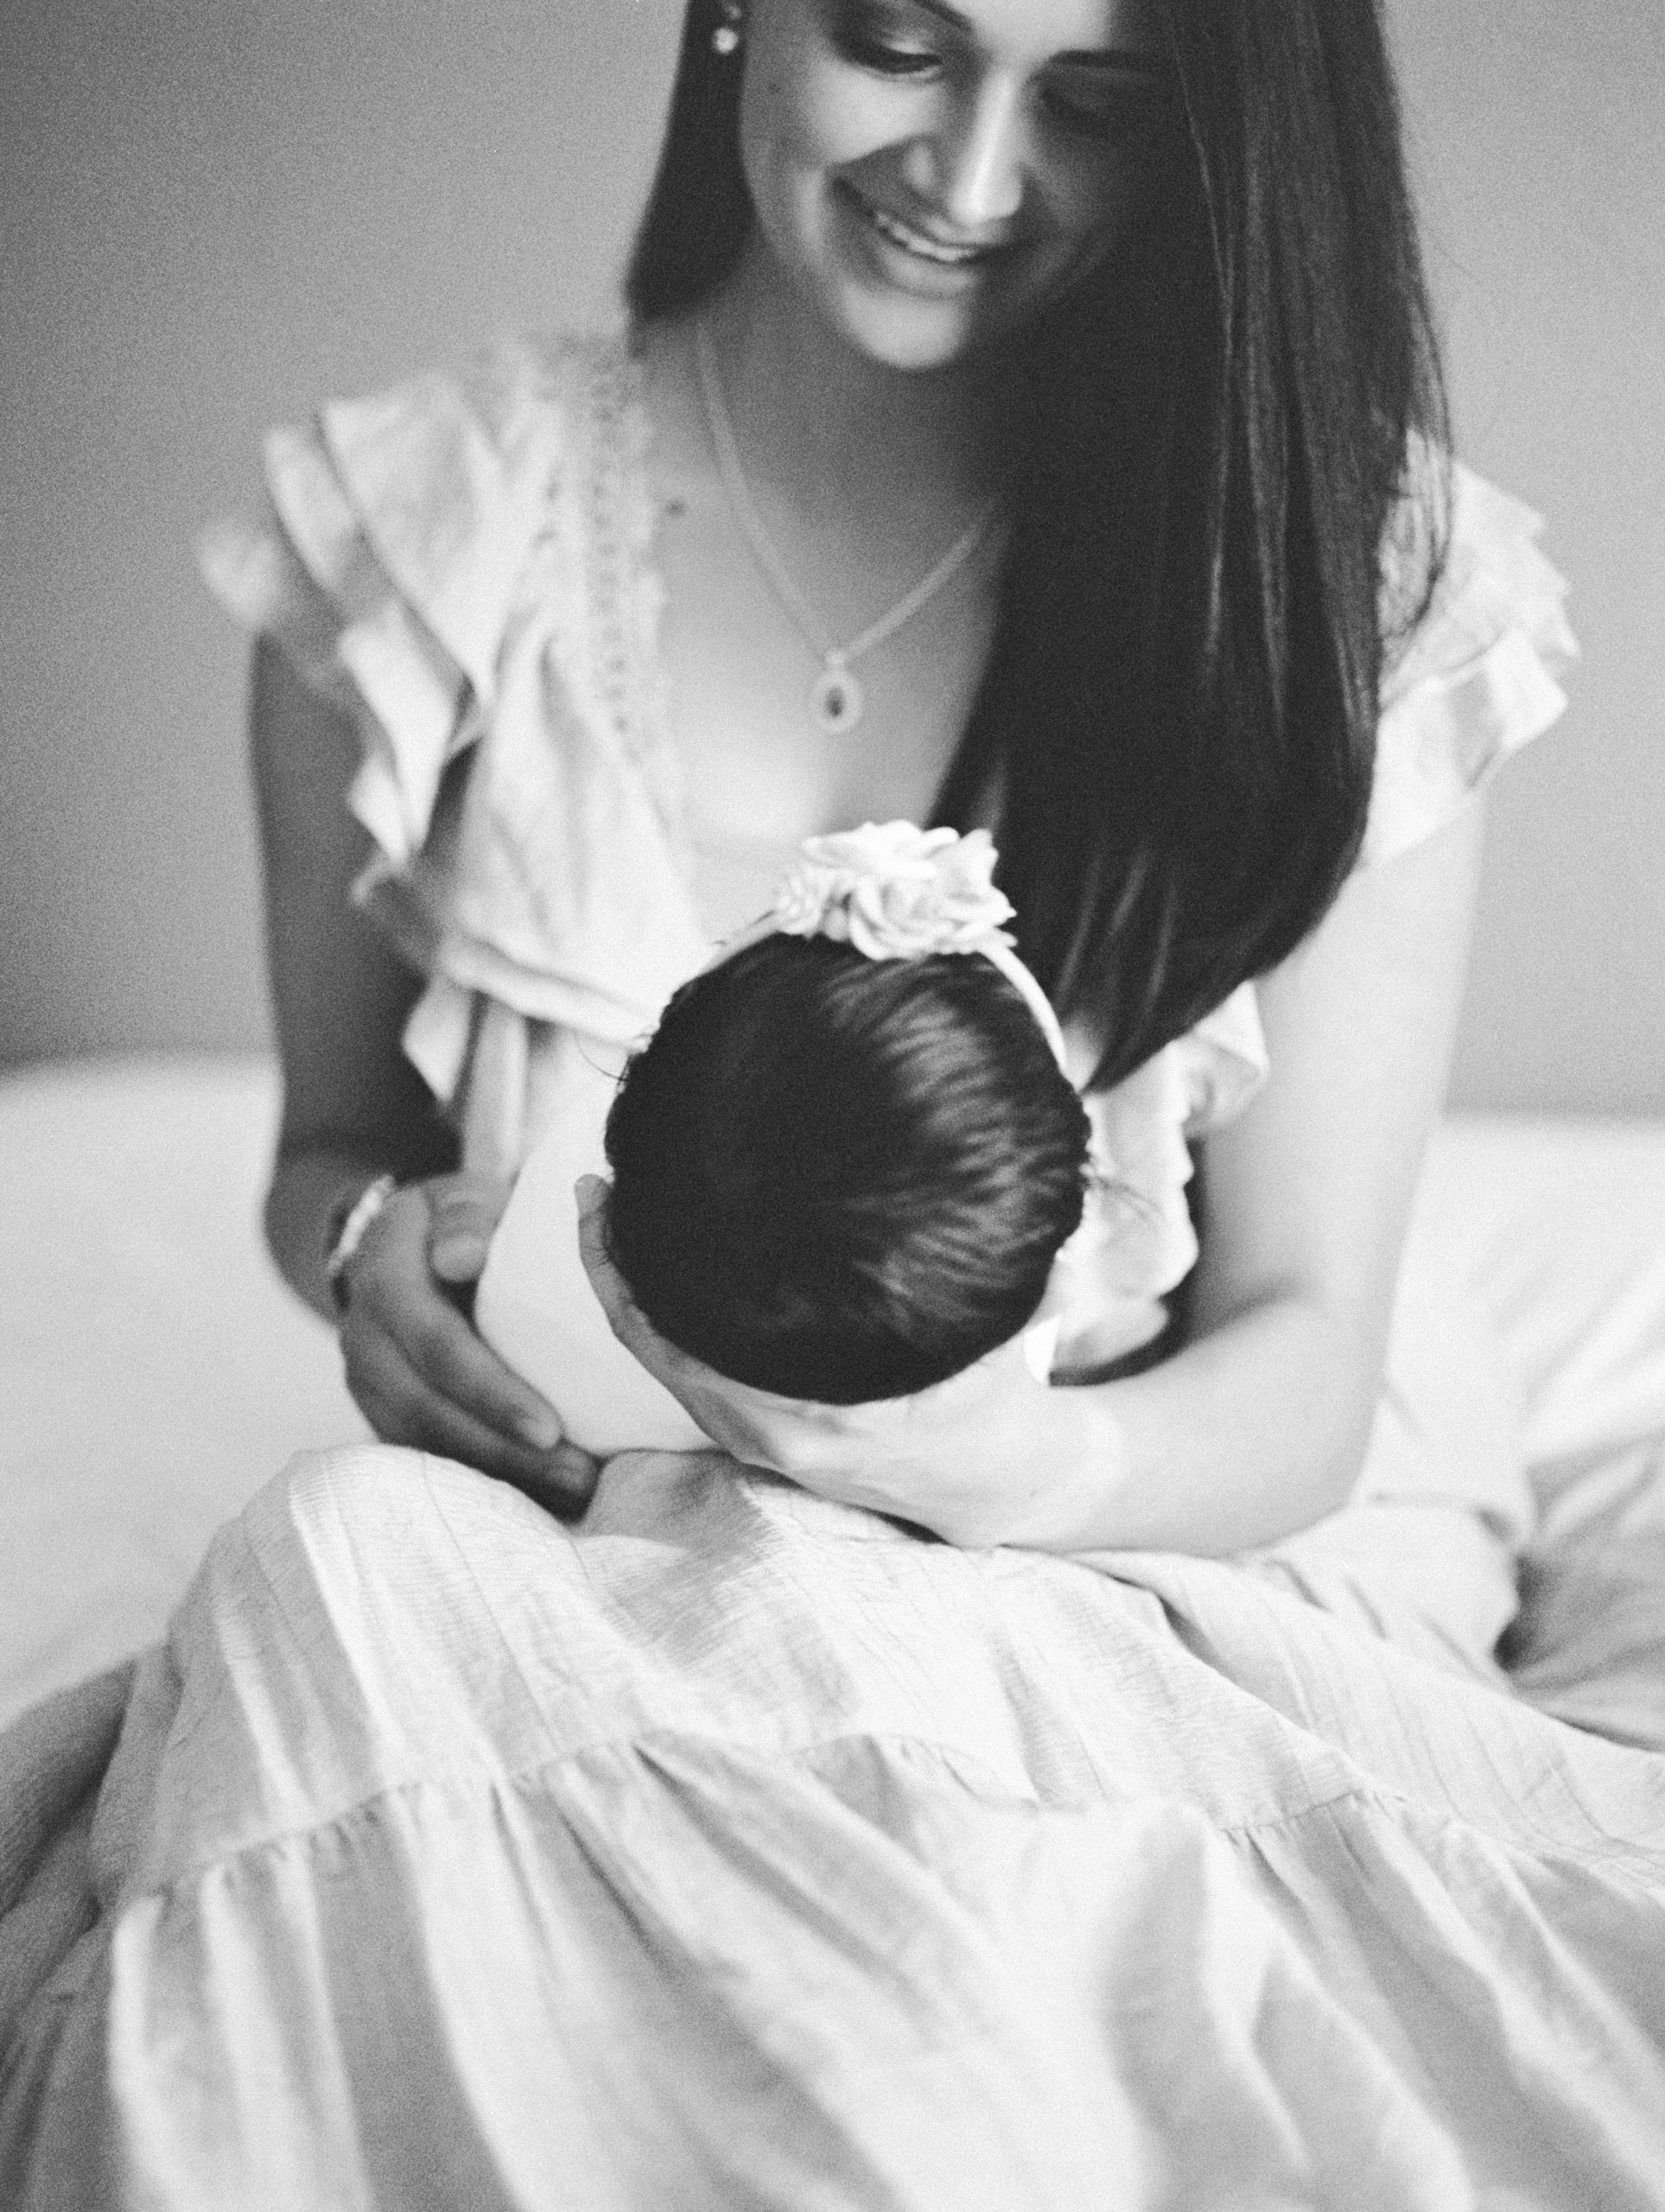 yuma-newborn-photography-black-and-white-baby-detail-photo